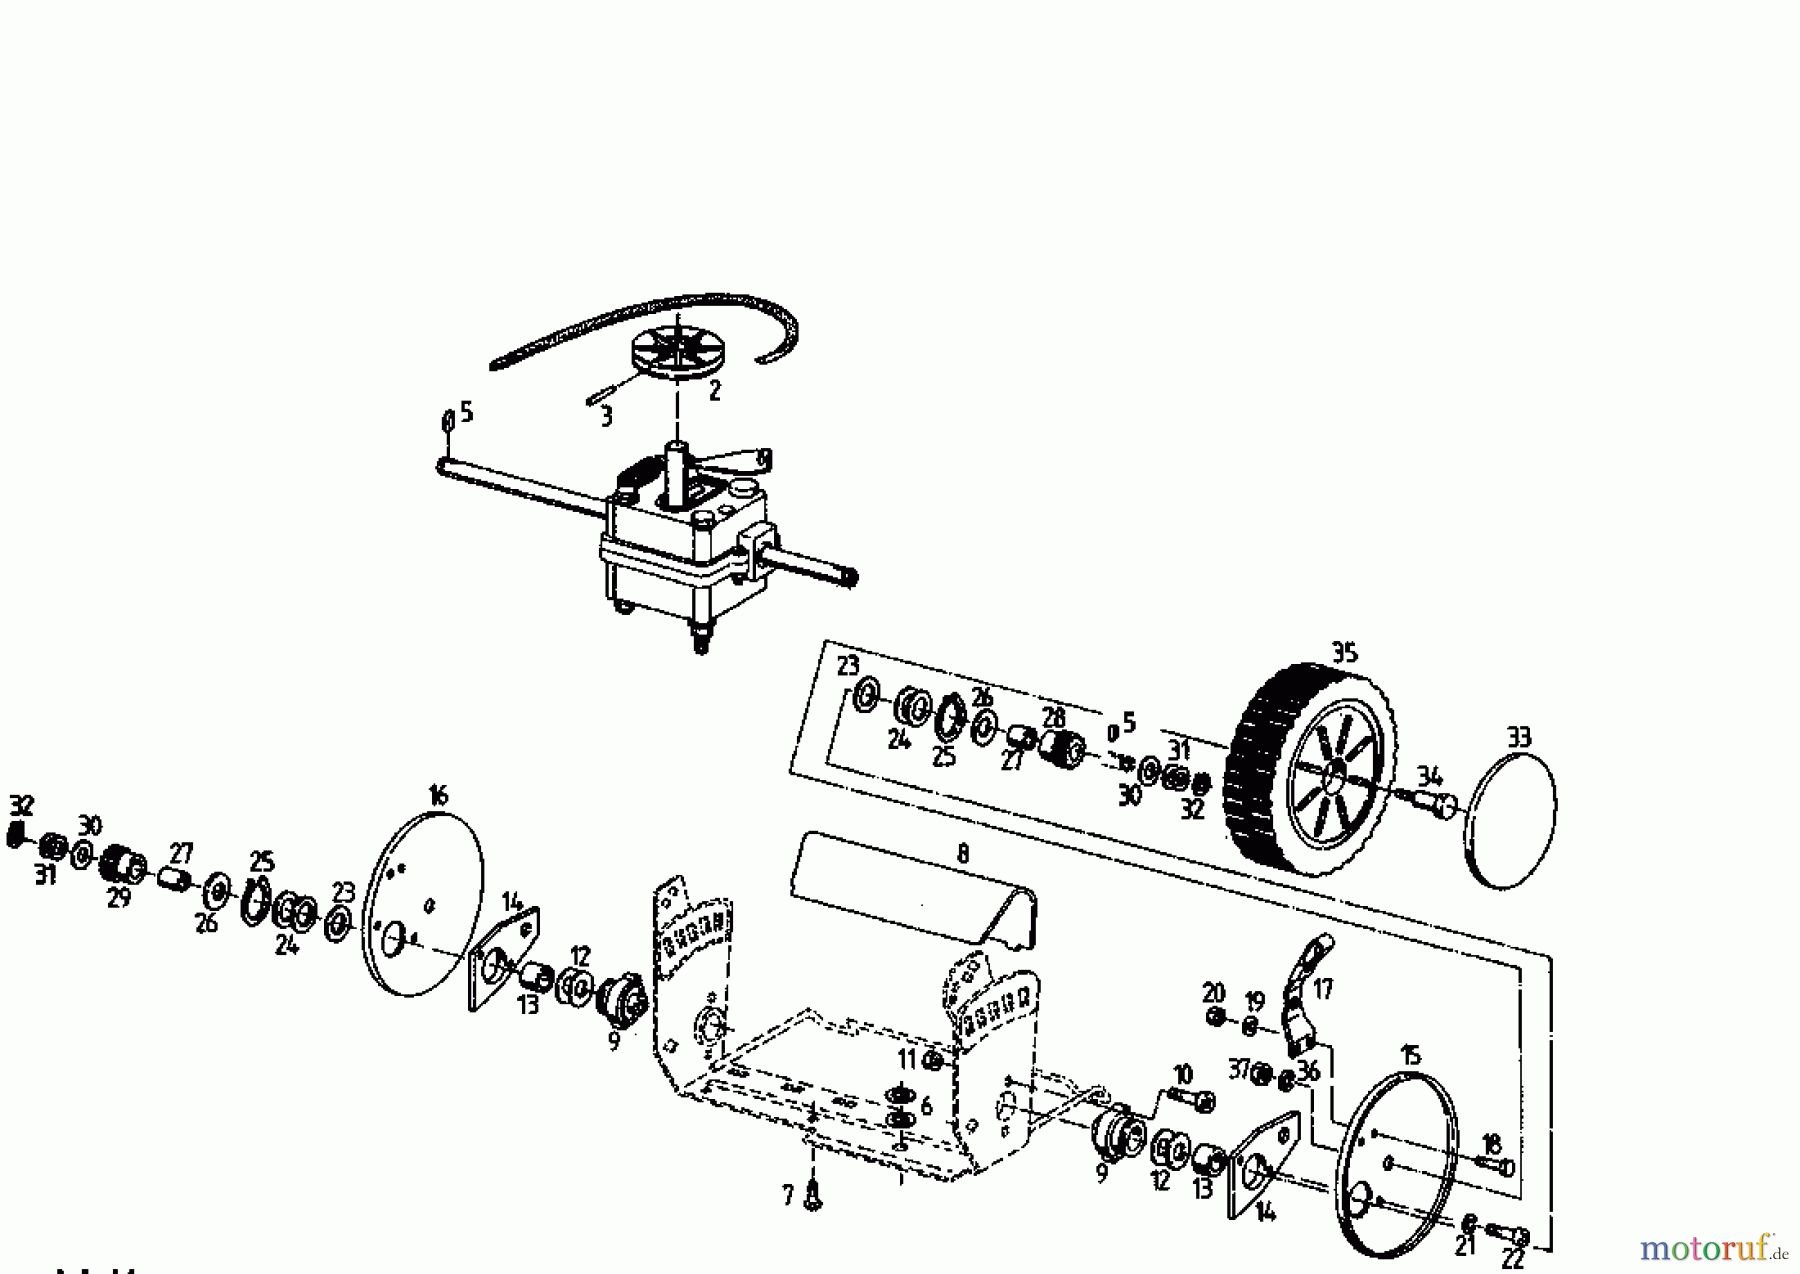  Kmg Motormäher mit Antrieb KMG 46 BA 04025.06  (1995) Getriebe, Räder, Schnitthöhenverstellung